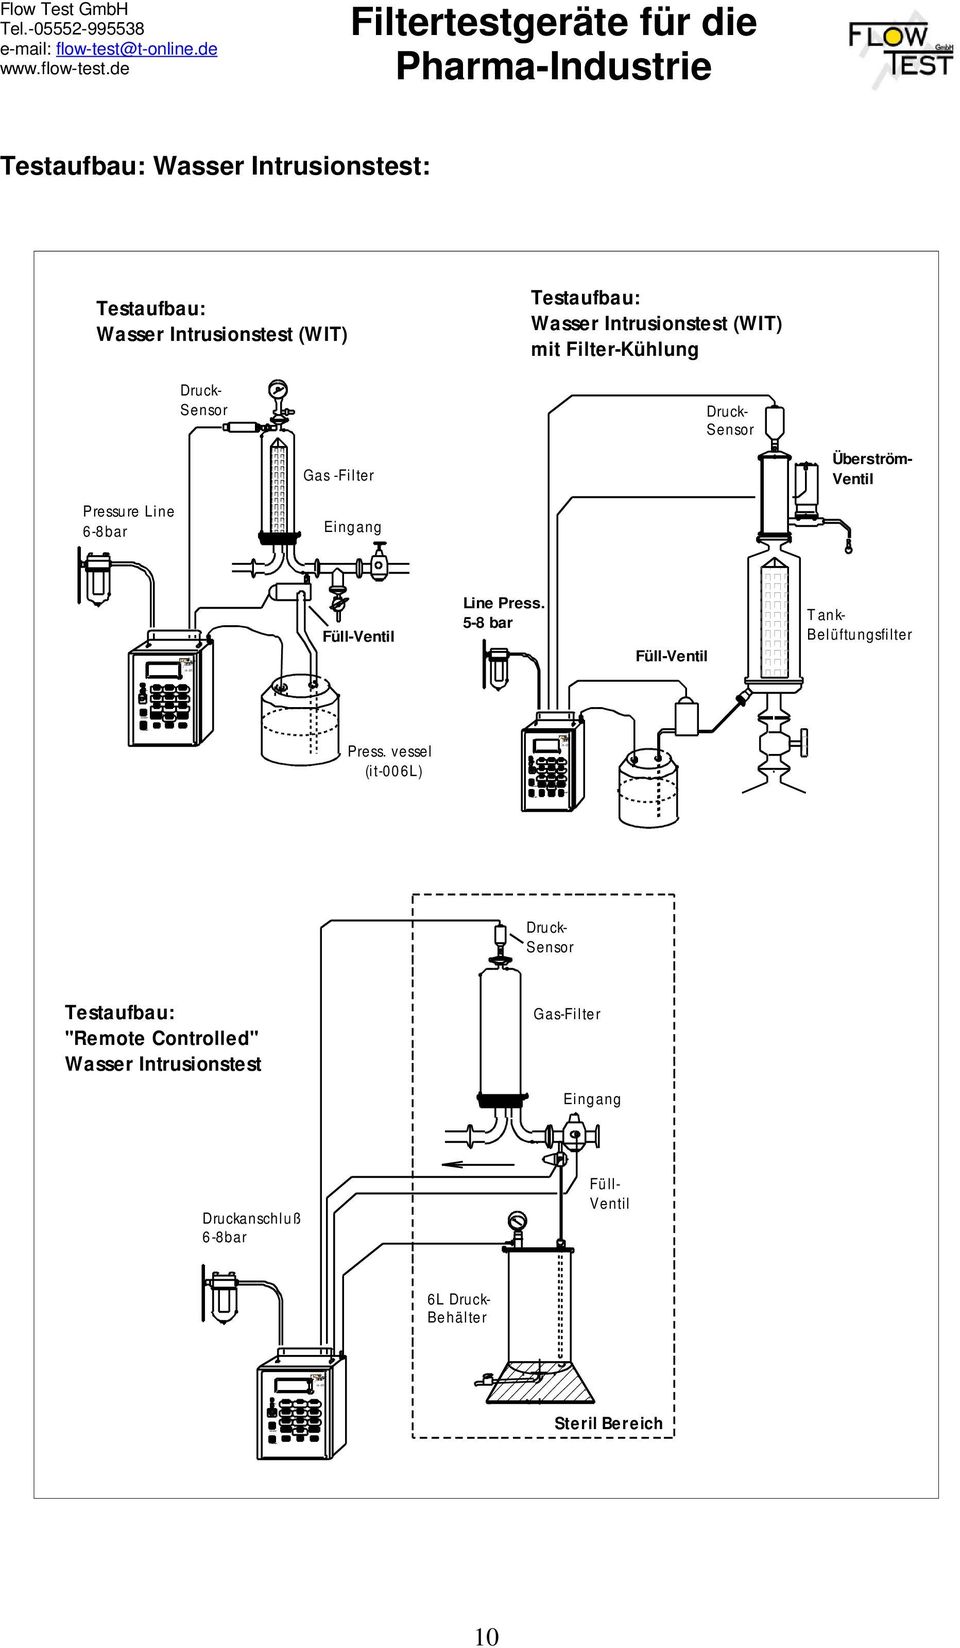 Intrusionstest: Testaufbau: Wasser Intrusionstest (WIT) Testaufbau: Wasser Intrusionstest (WIT) mit Filter-Kühlung Druck- Sensor Druck- Sensor Gas -Filter Überström- Ventil